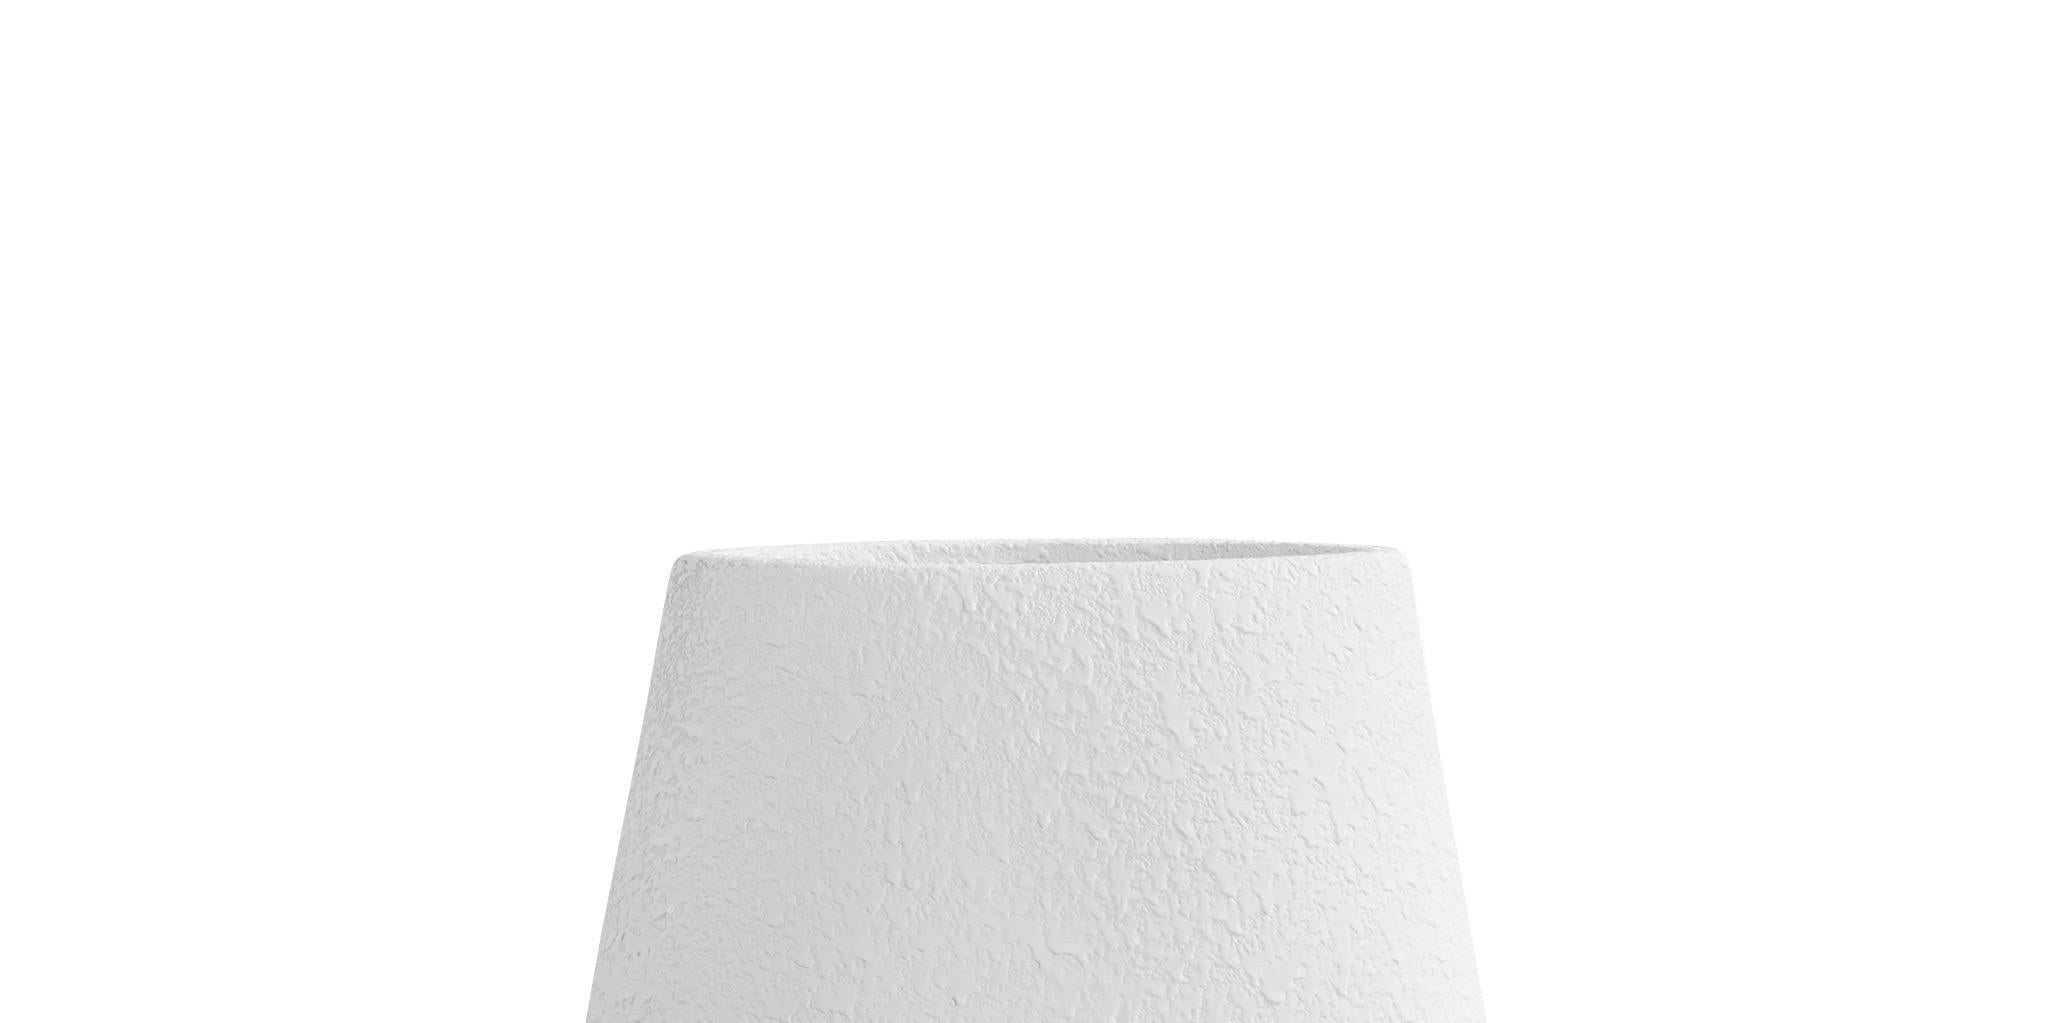 Tall Textured White Arrow Shaped Ceramic Vase, Denmark, Contemporary (Französisch)